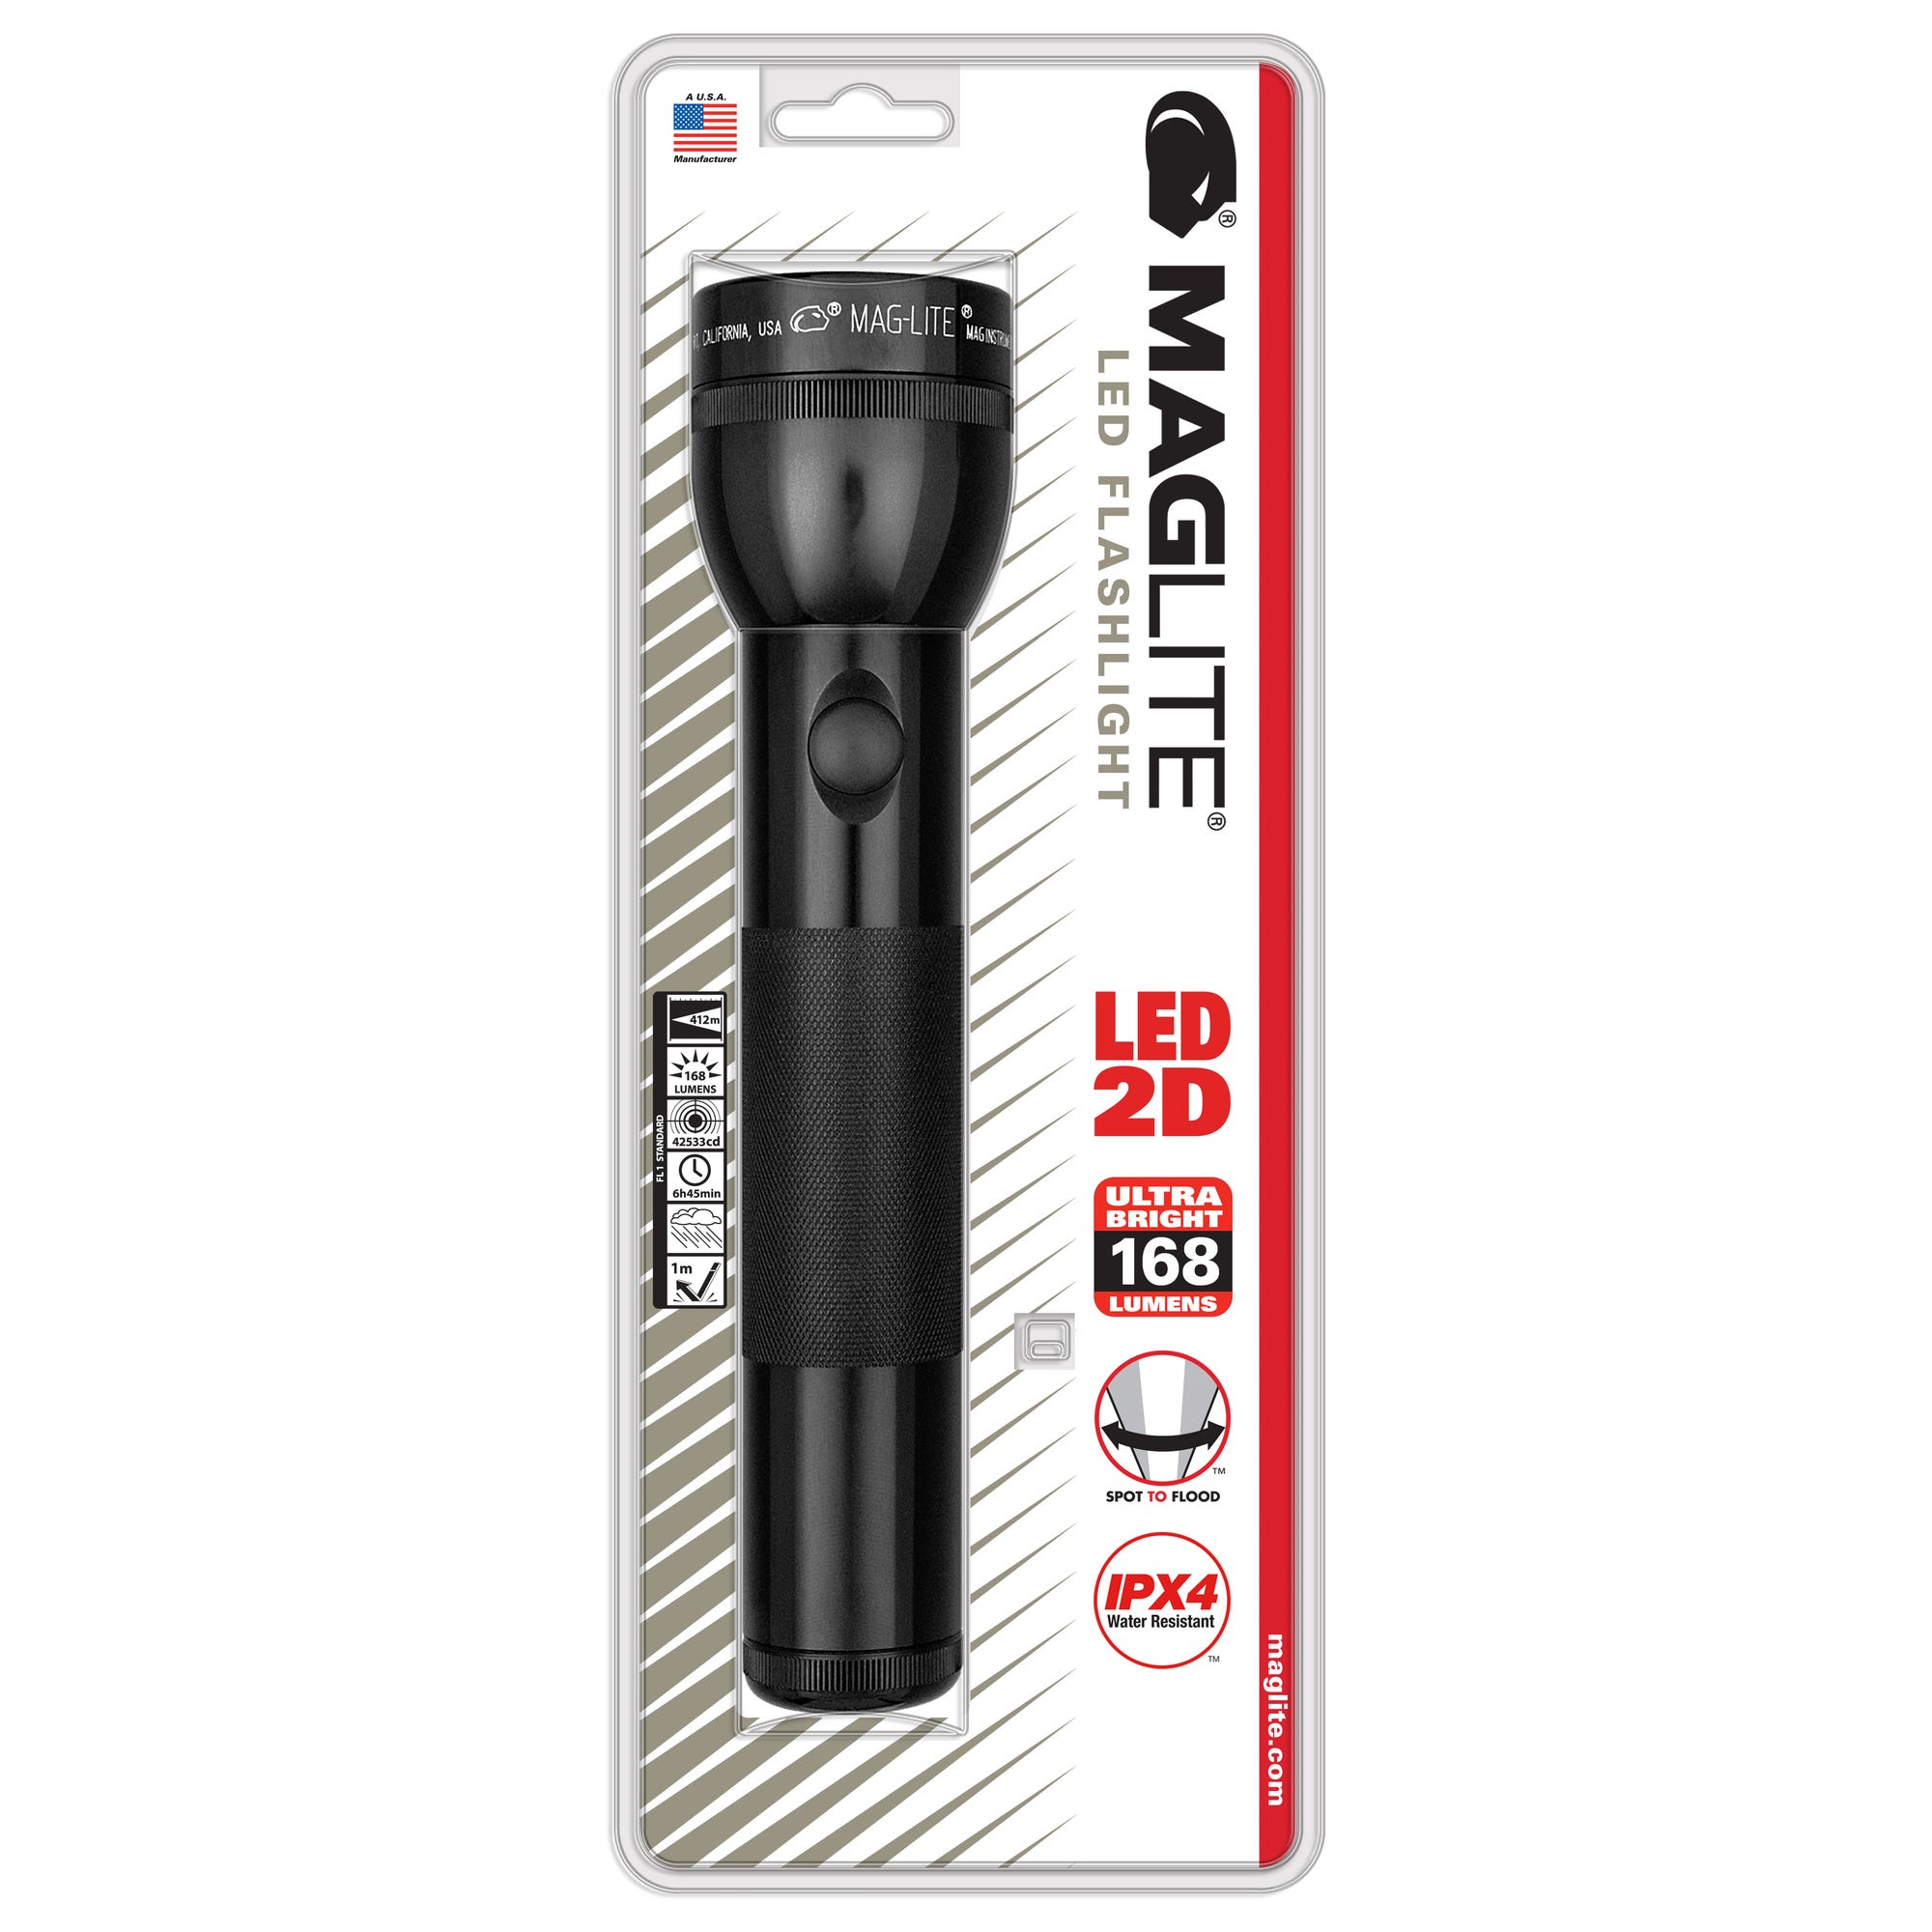 Lampe torche LED ST2 - IPX4 - 2 piles LR20 D - 213 lumens - 25cm - Noir - Maglite 2